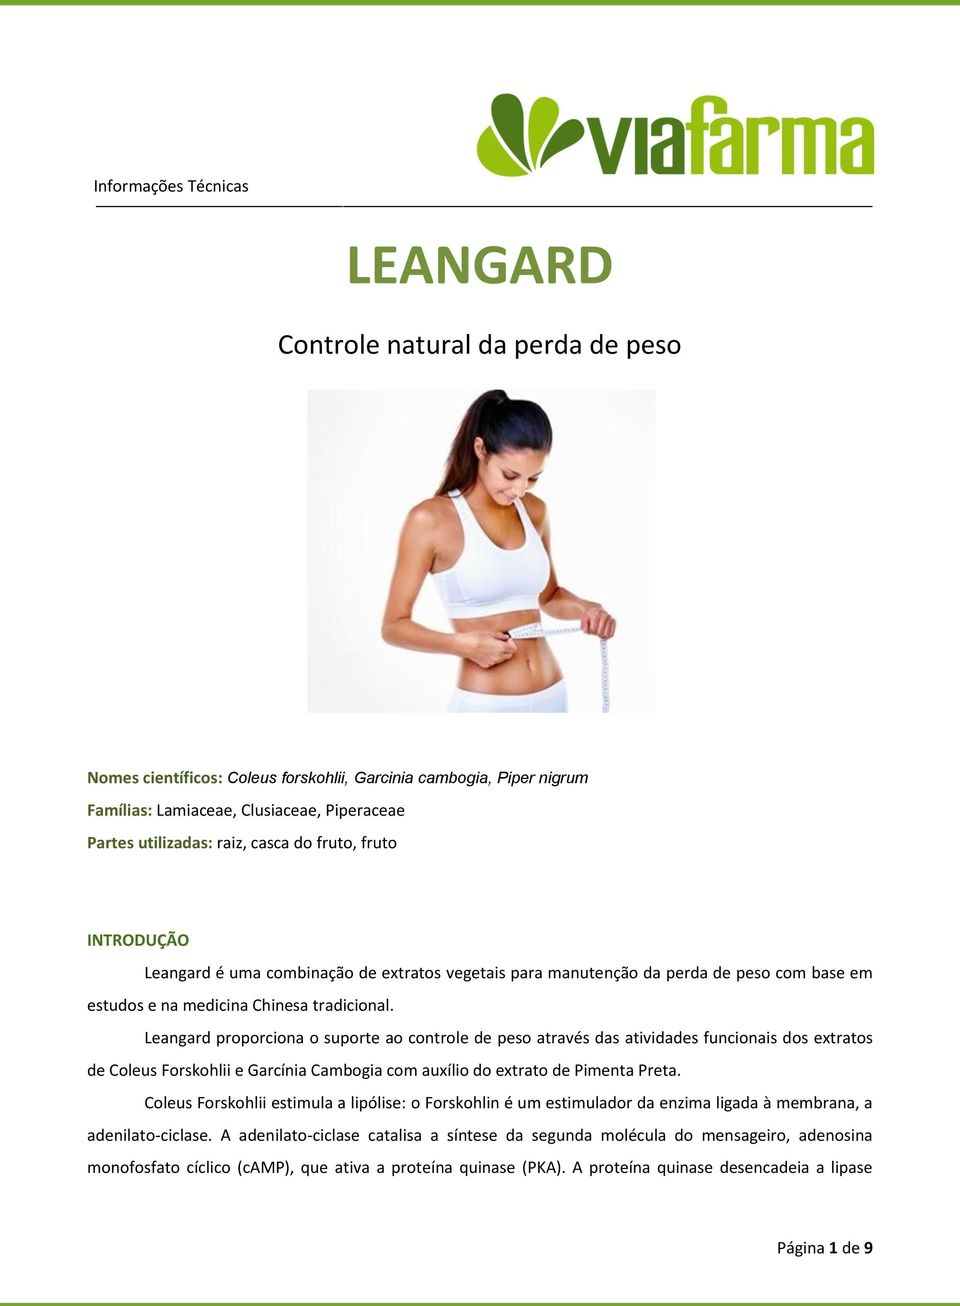 Leangard proporciona o suporte ao controle de peso através das atividades funcionais dos extratos de Coleus Forskohlii e Garcínia Cambogia com auxílio do extrato de Pimenta Preta.